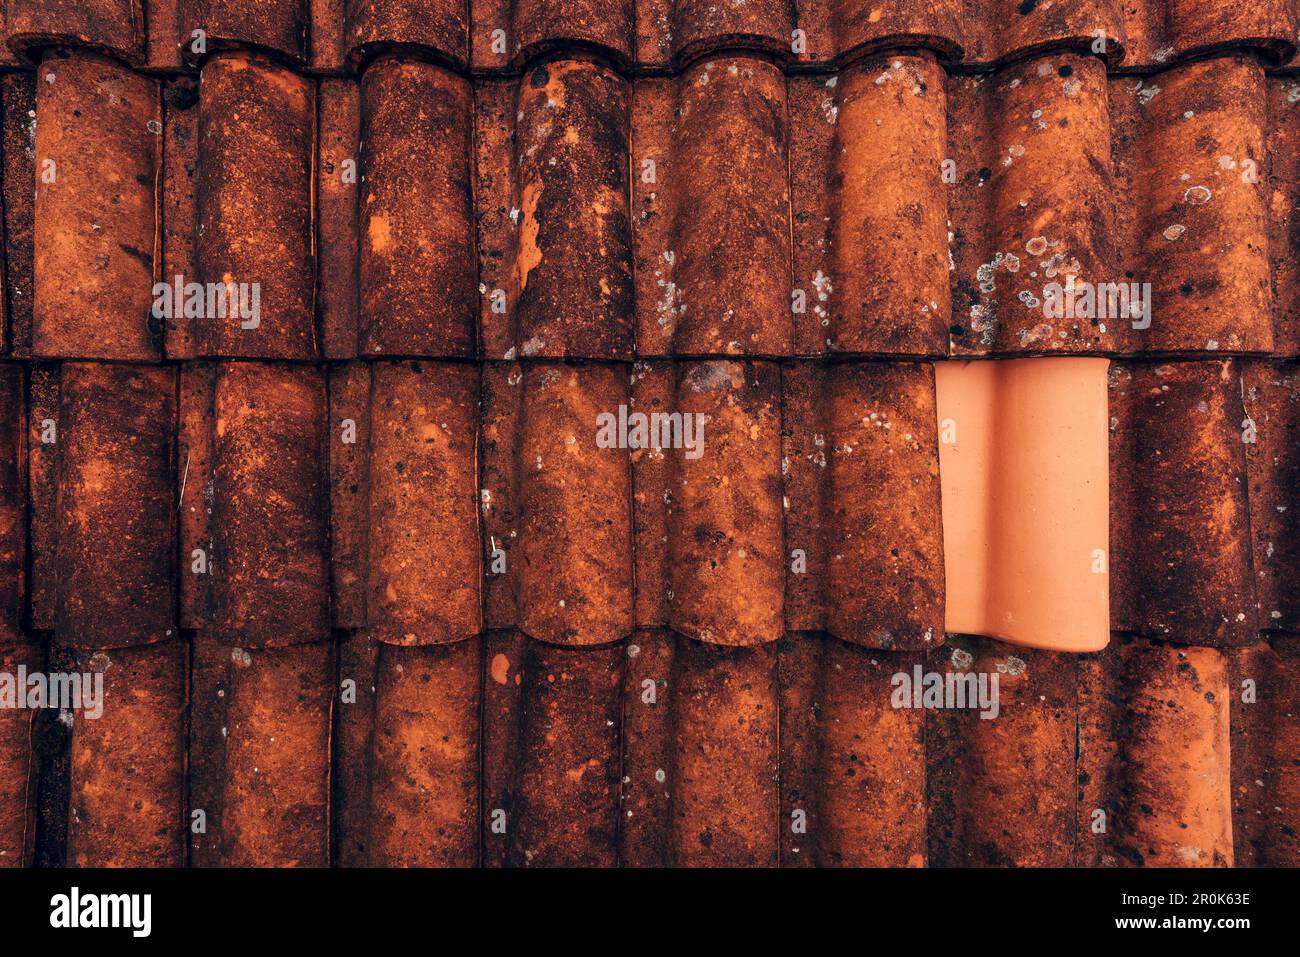 Un nouveau carrelage de toit en argile sur un vieux toit rustique en terre cuite comme arrière-plan, détail architectural de Lovran, Croatie Banque D'Images